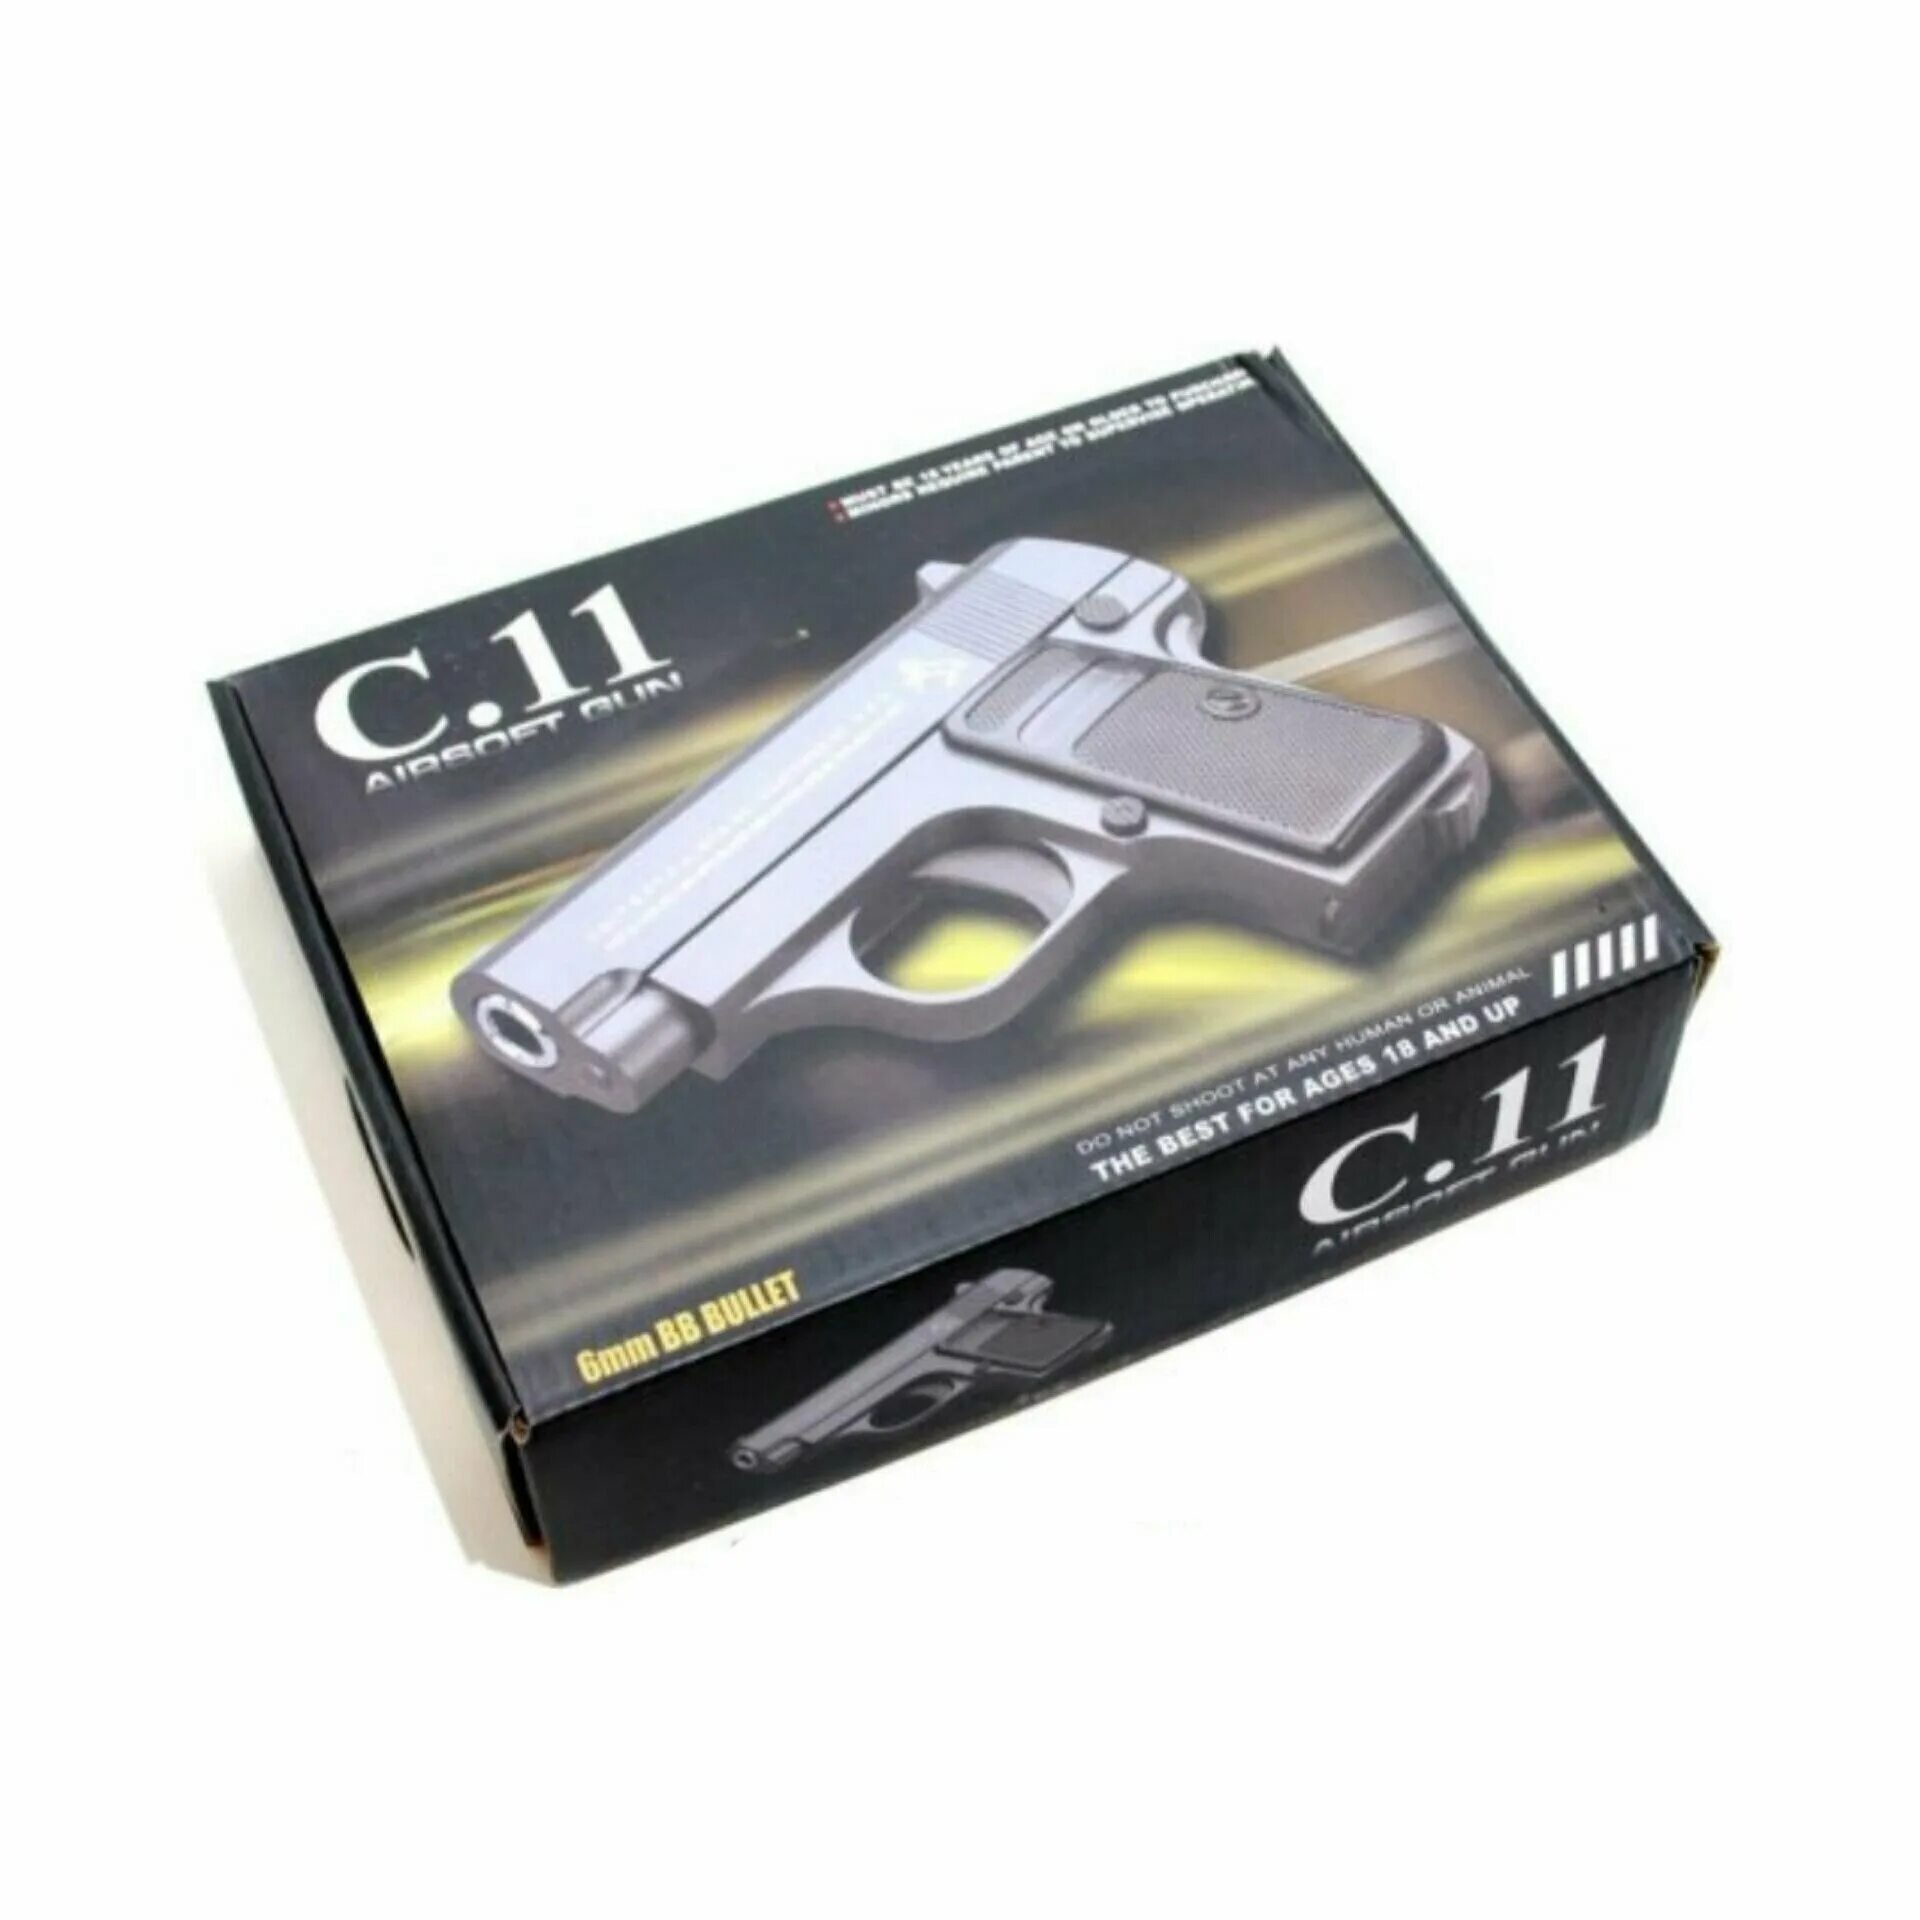 C gun